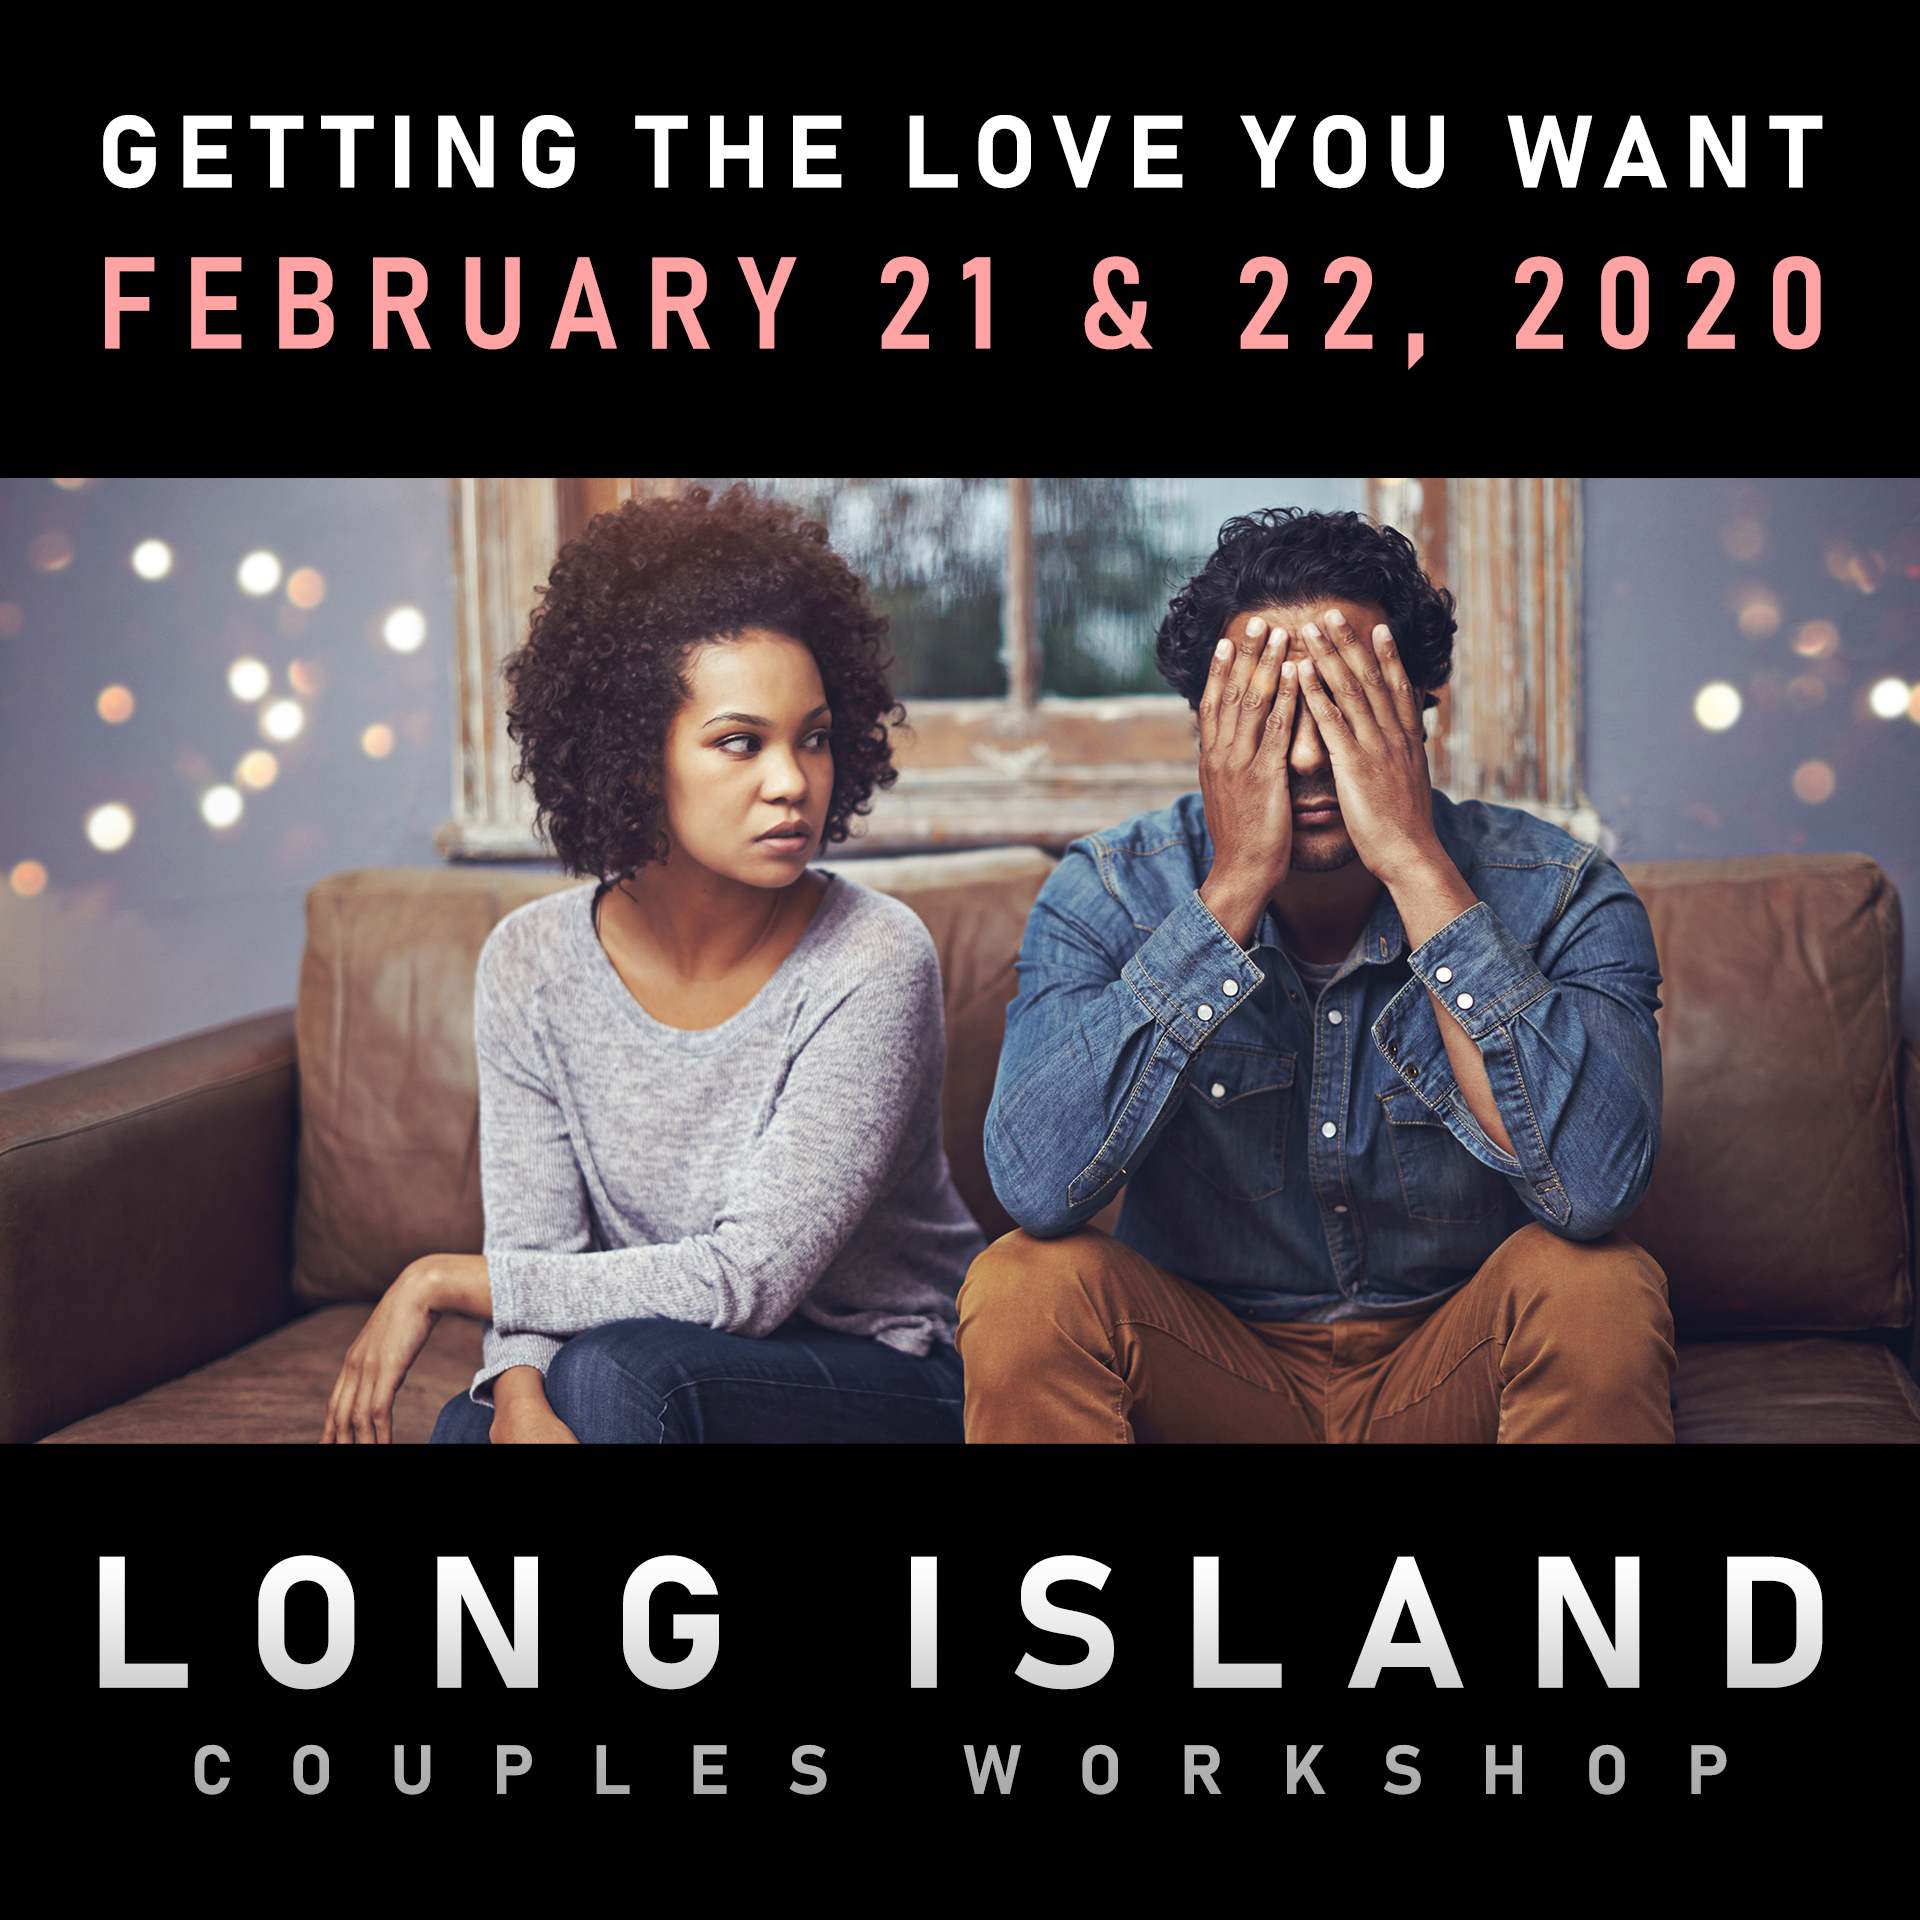 Couples Workshop Feb 21 & 22, 2020